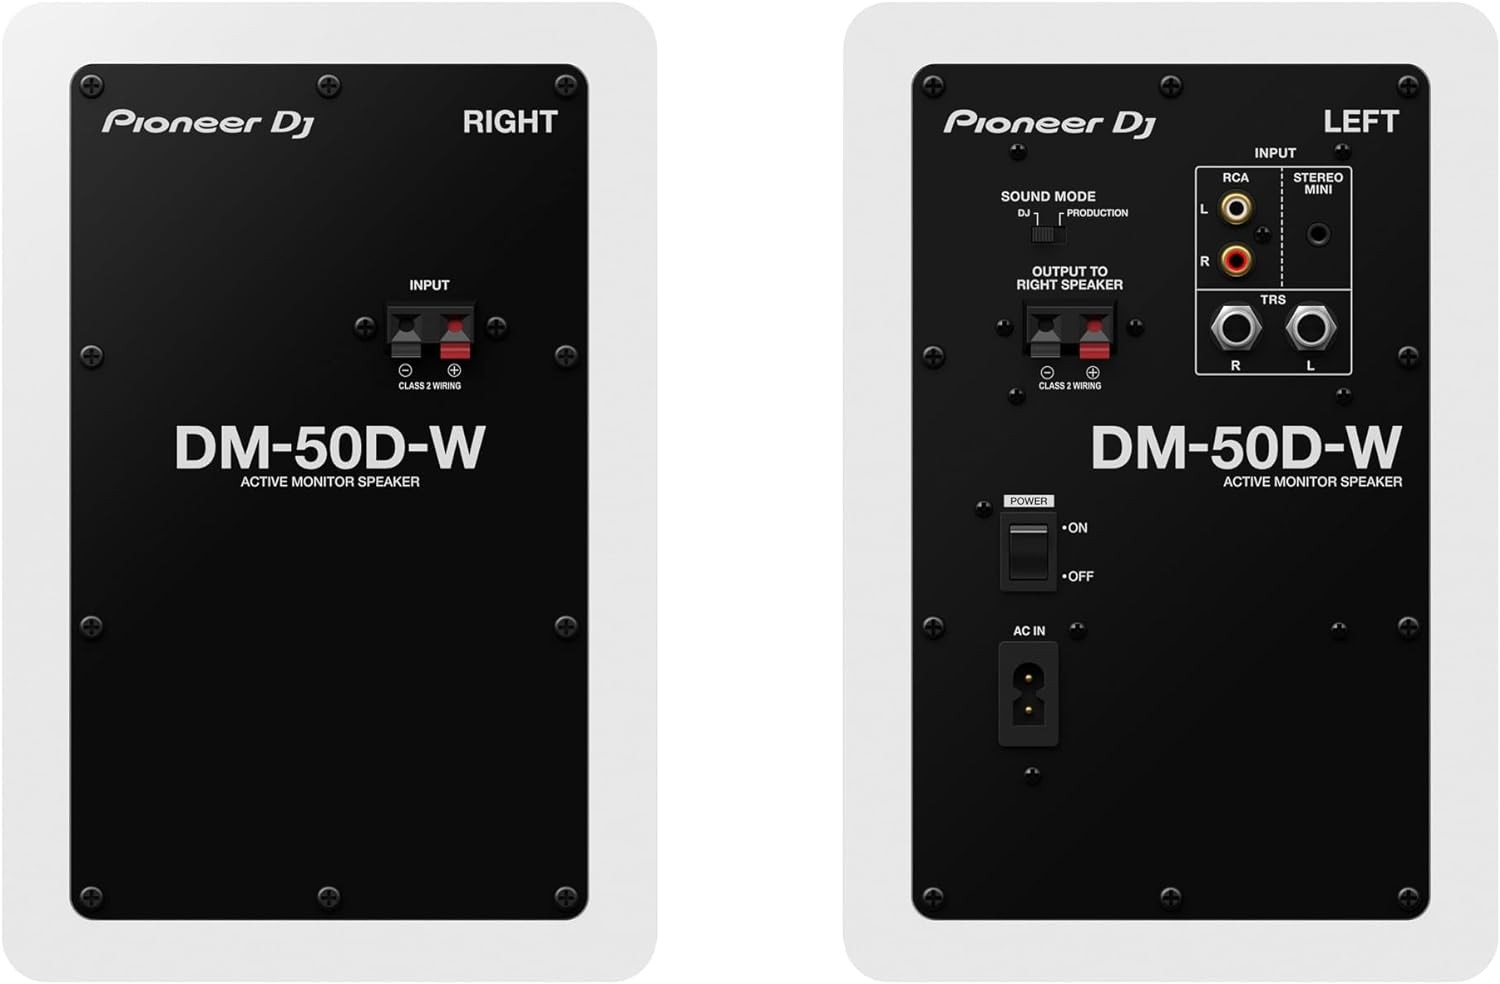 camaras y audio - Monitores Pioneer DJ DM-50D Altavoz de monitor activo de 5 pulgadas - Blanco 3